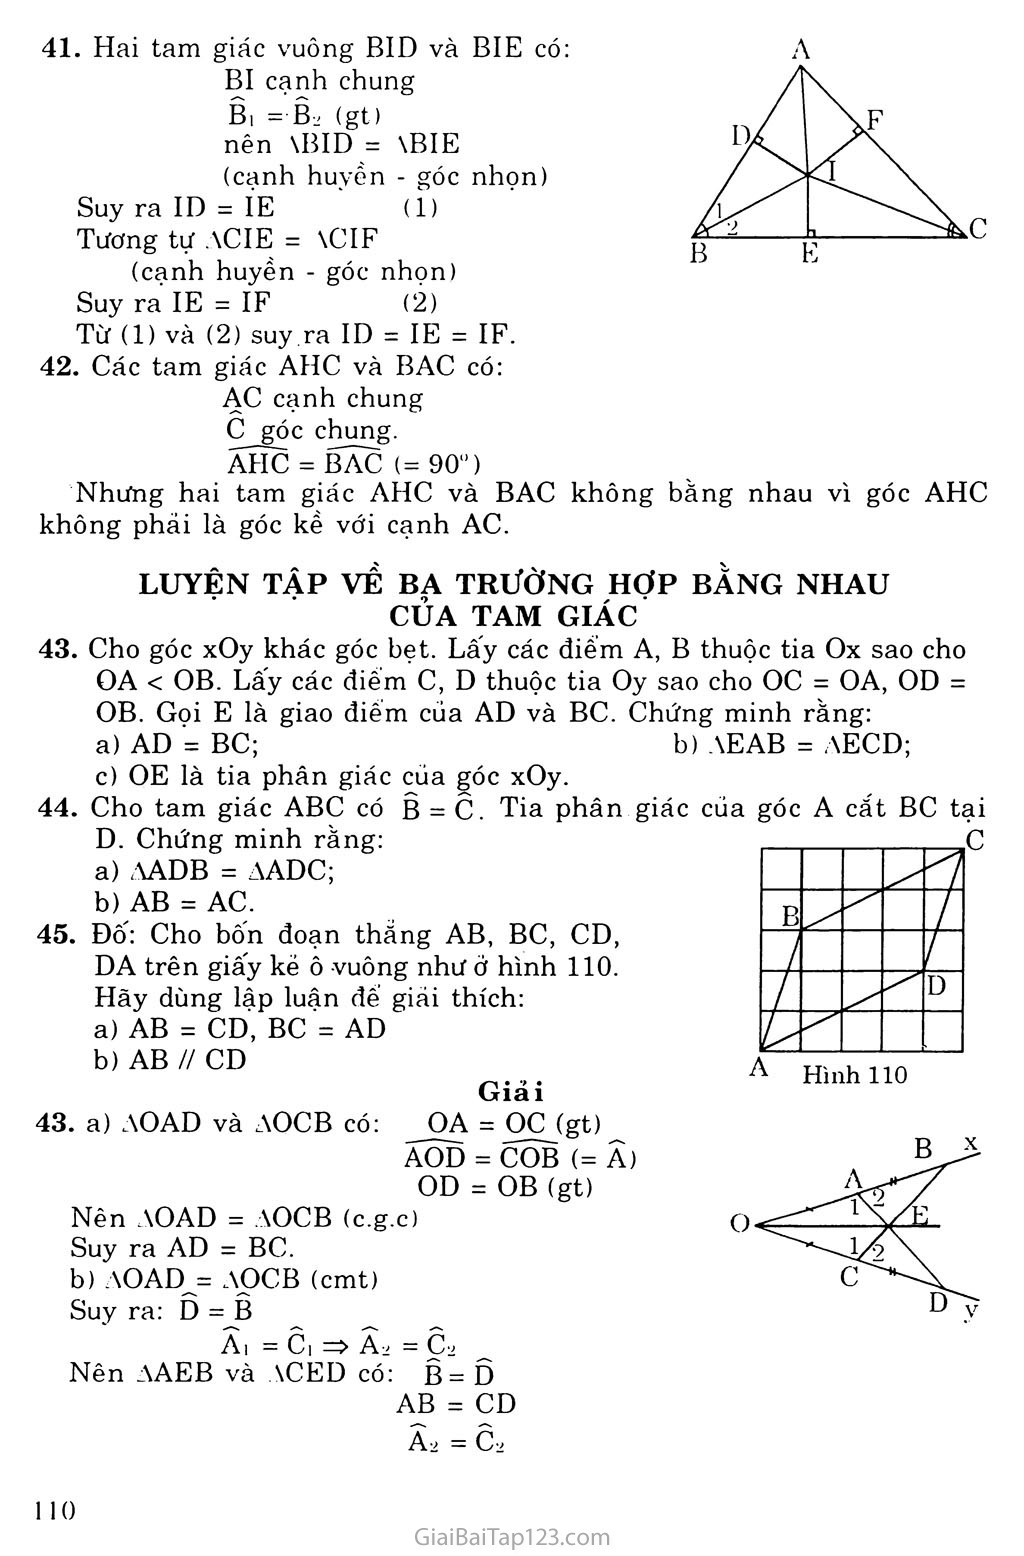 Bài 5. Trường hợp bằng nhau thứ ba của tam giác: góc - cạnh - góc (g. c. g) trang 6